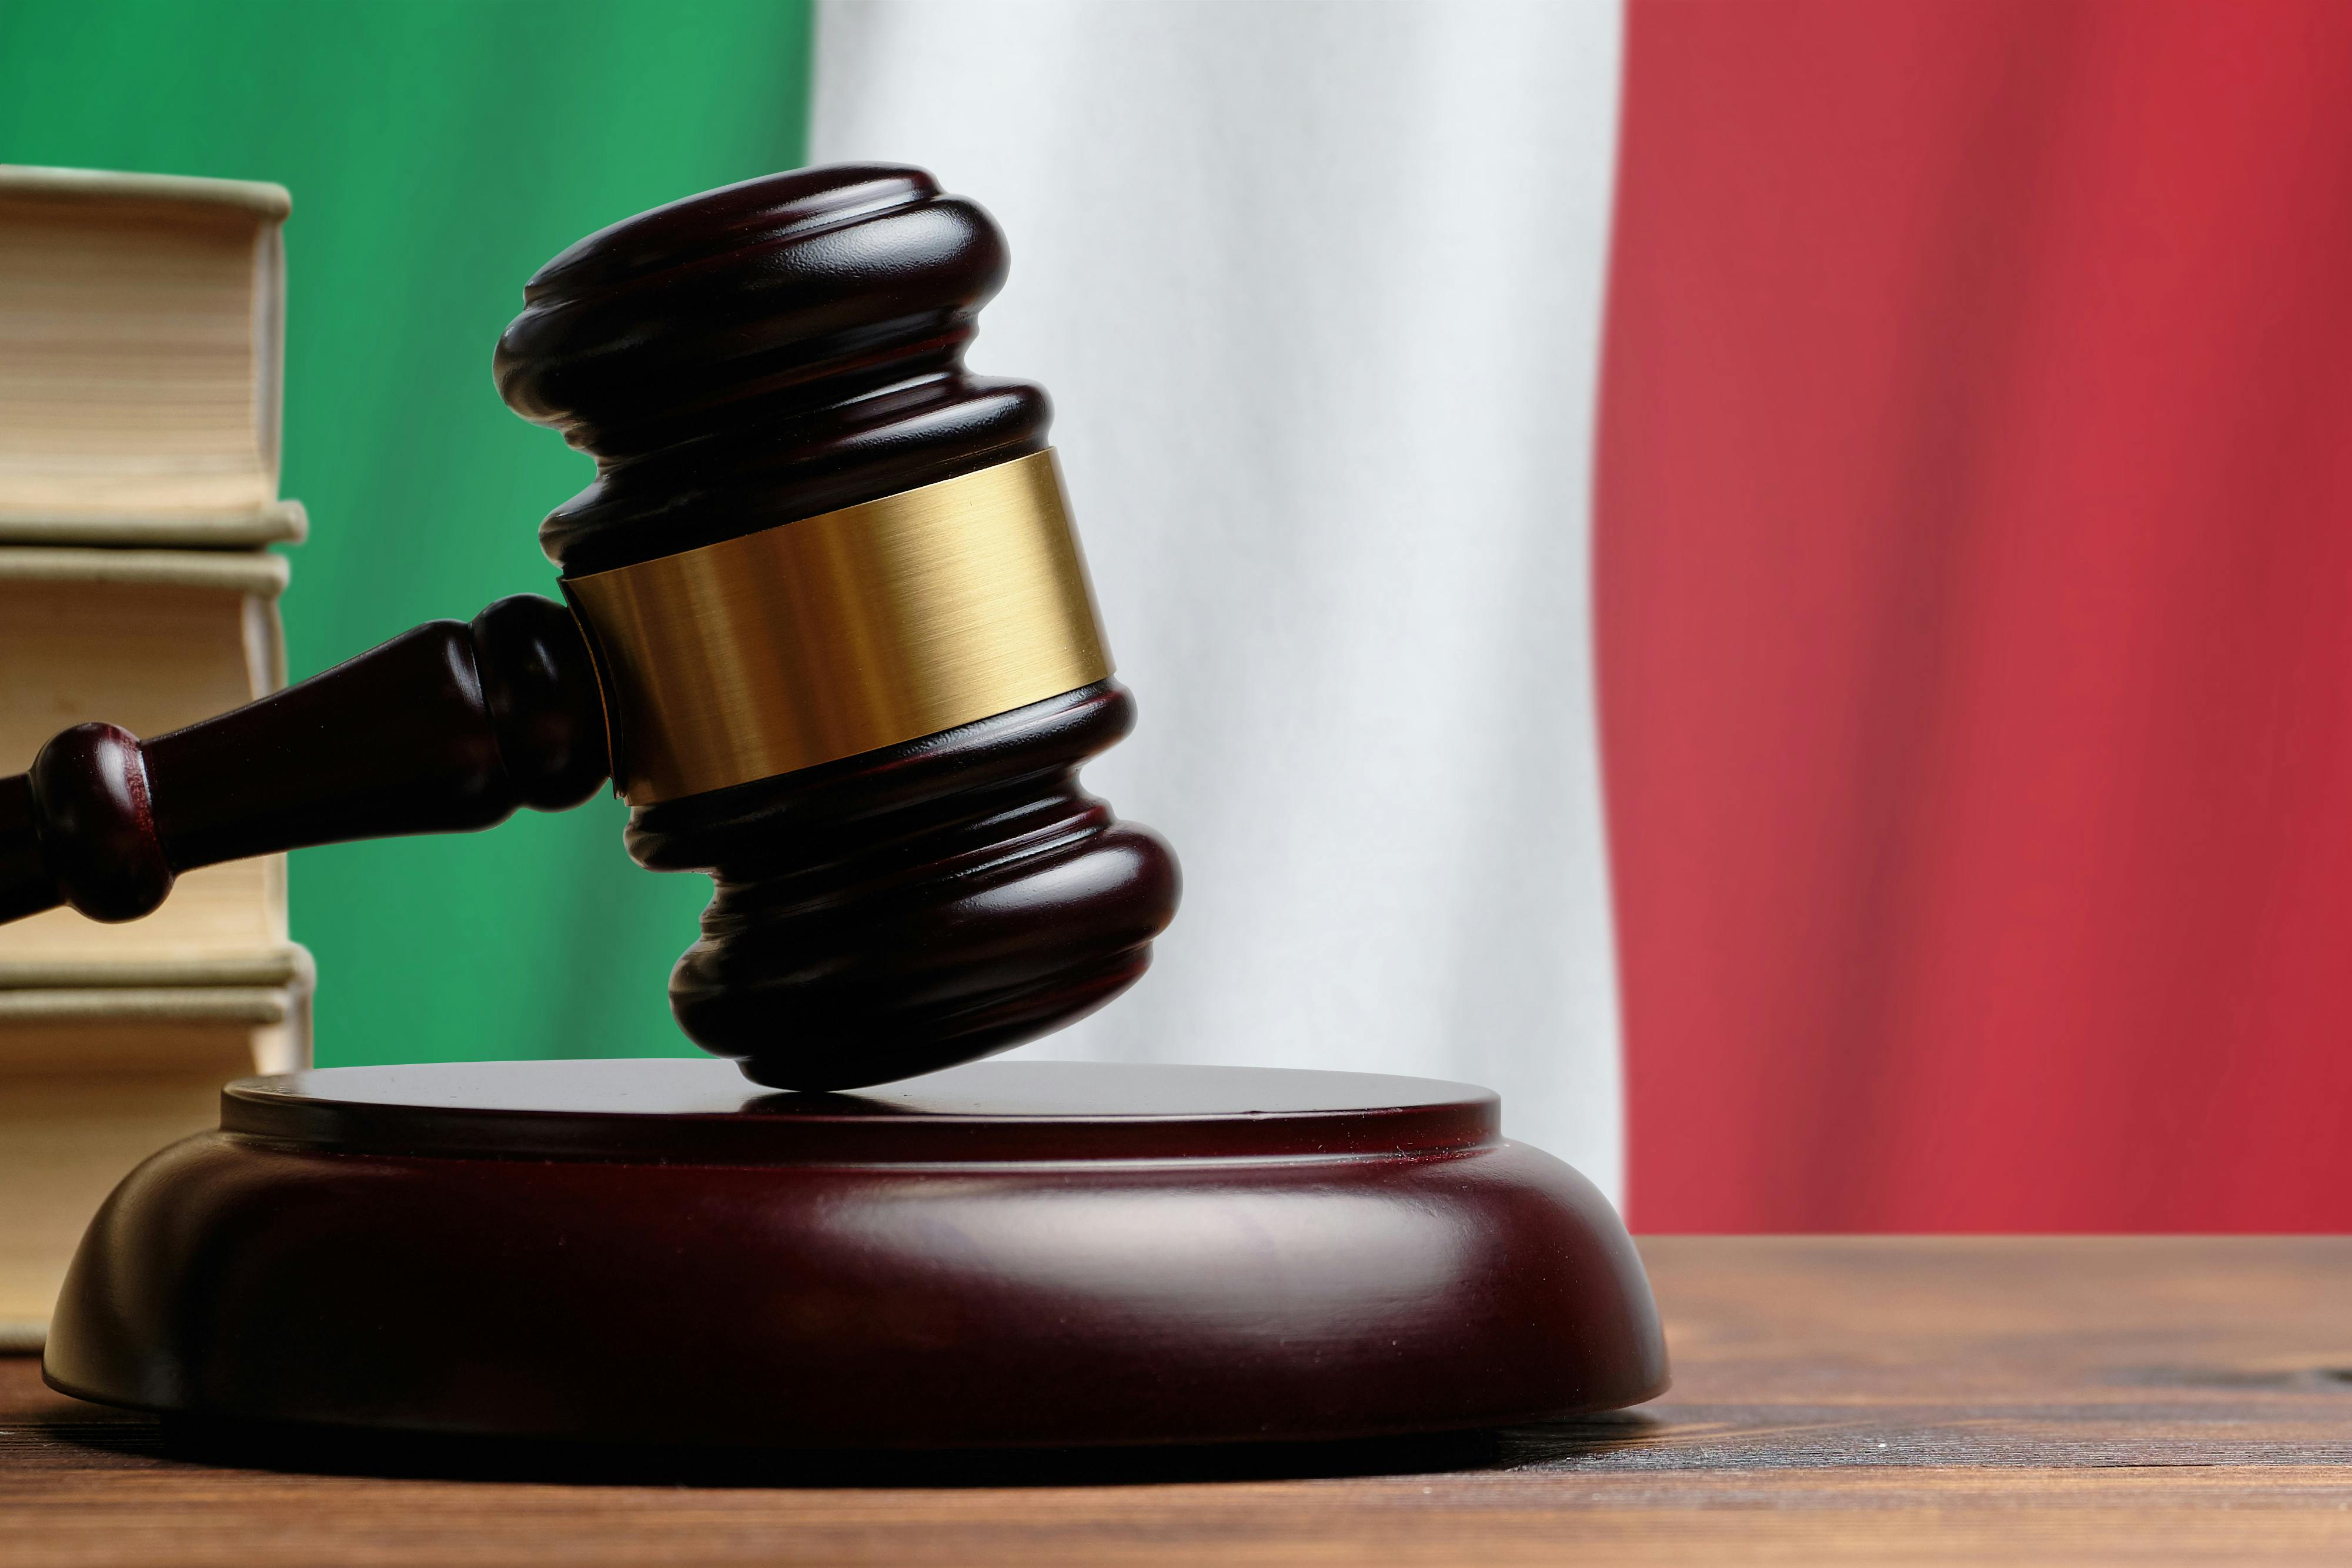 Den dommerhammer foran det italienske flag